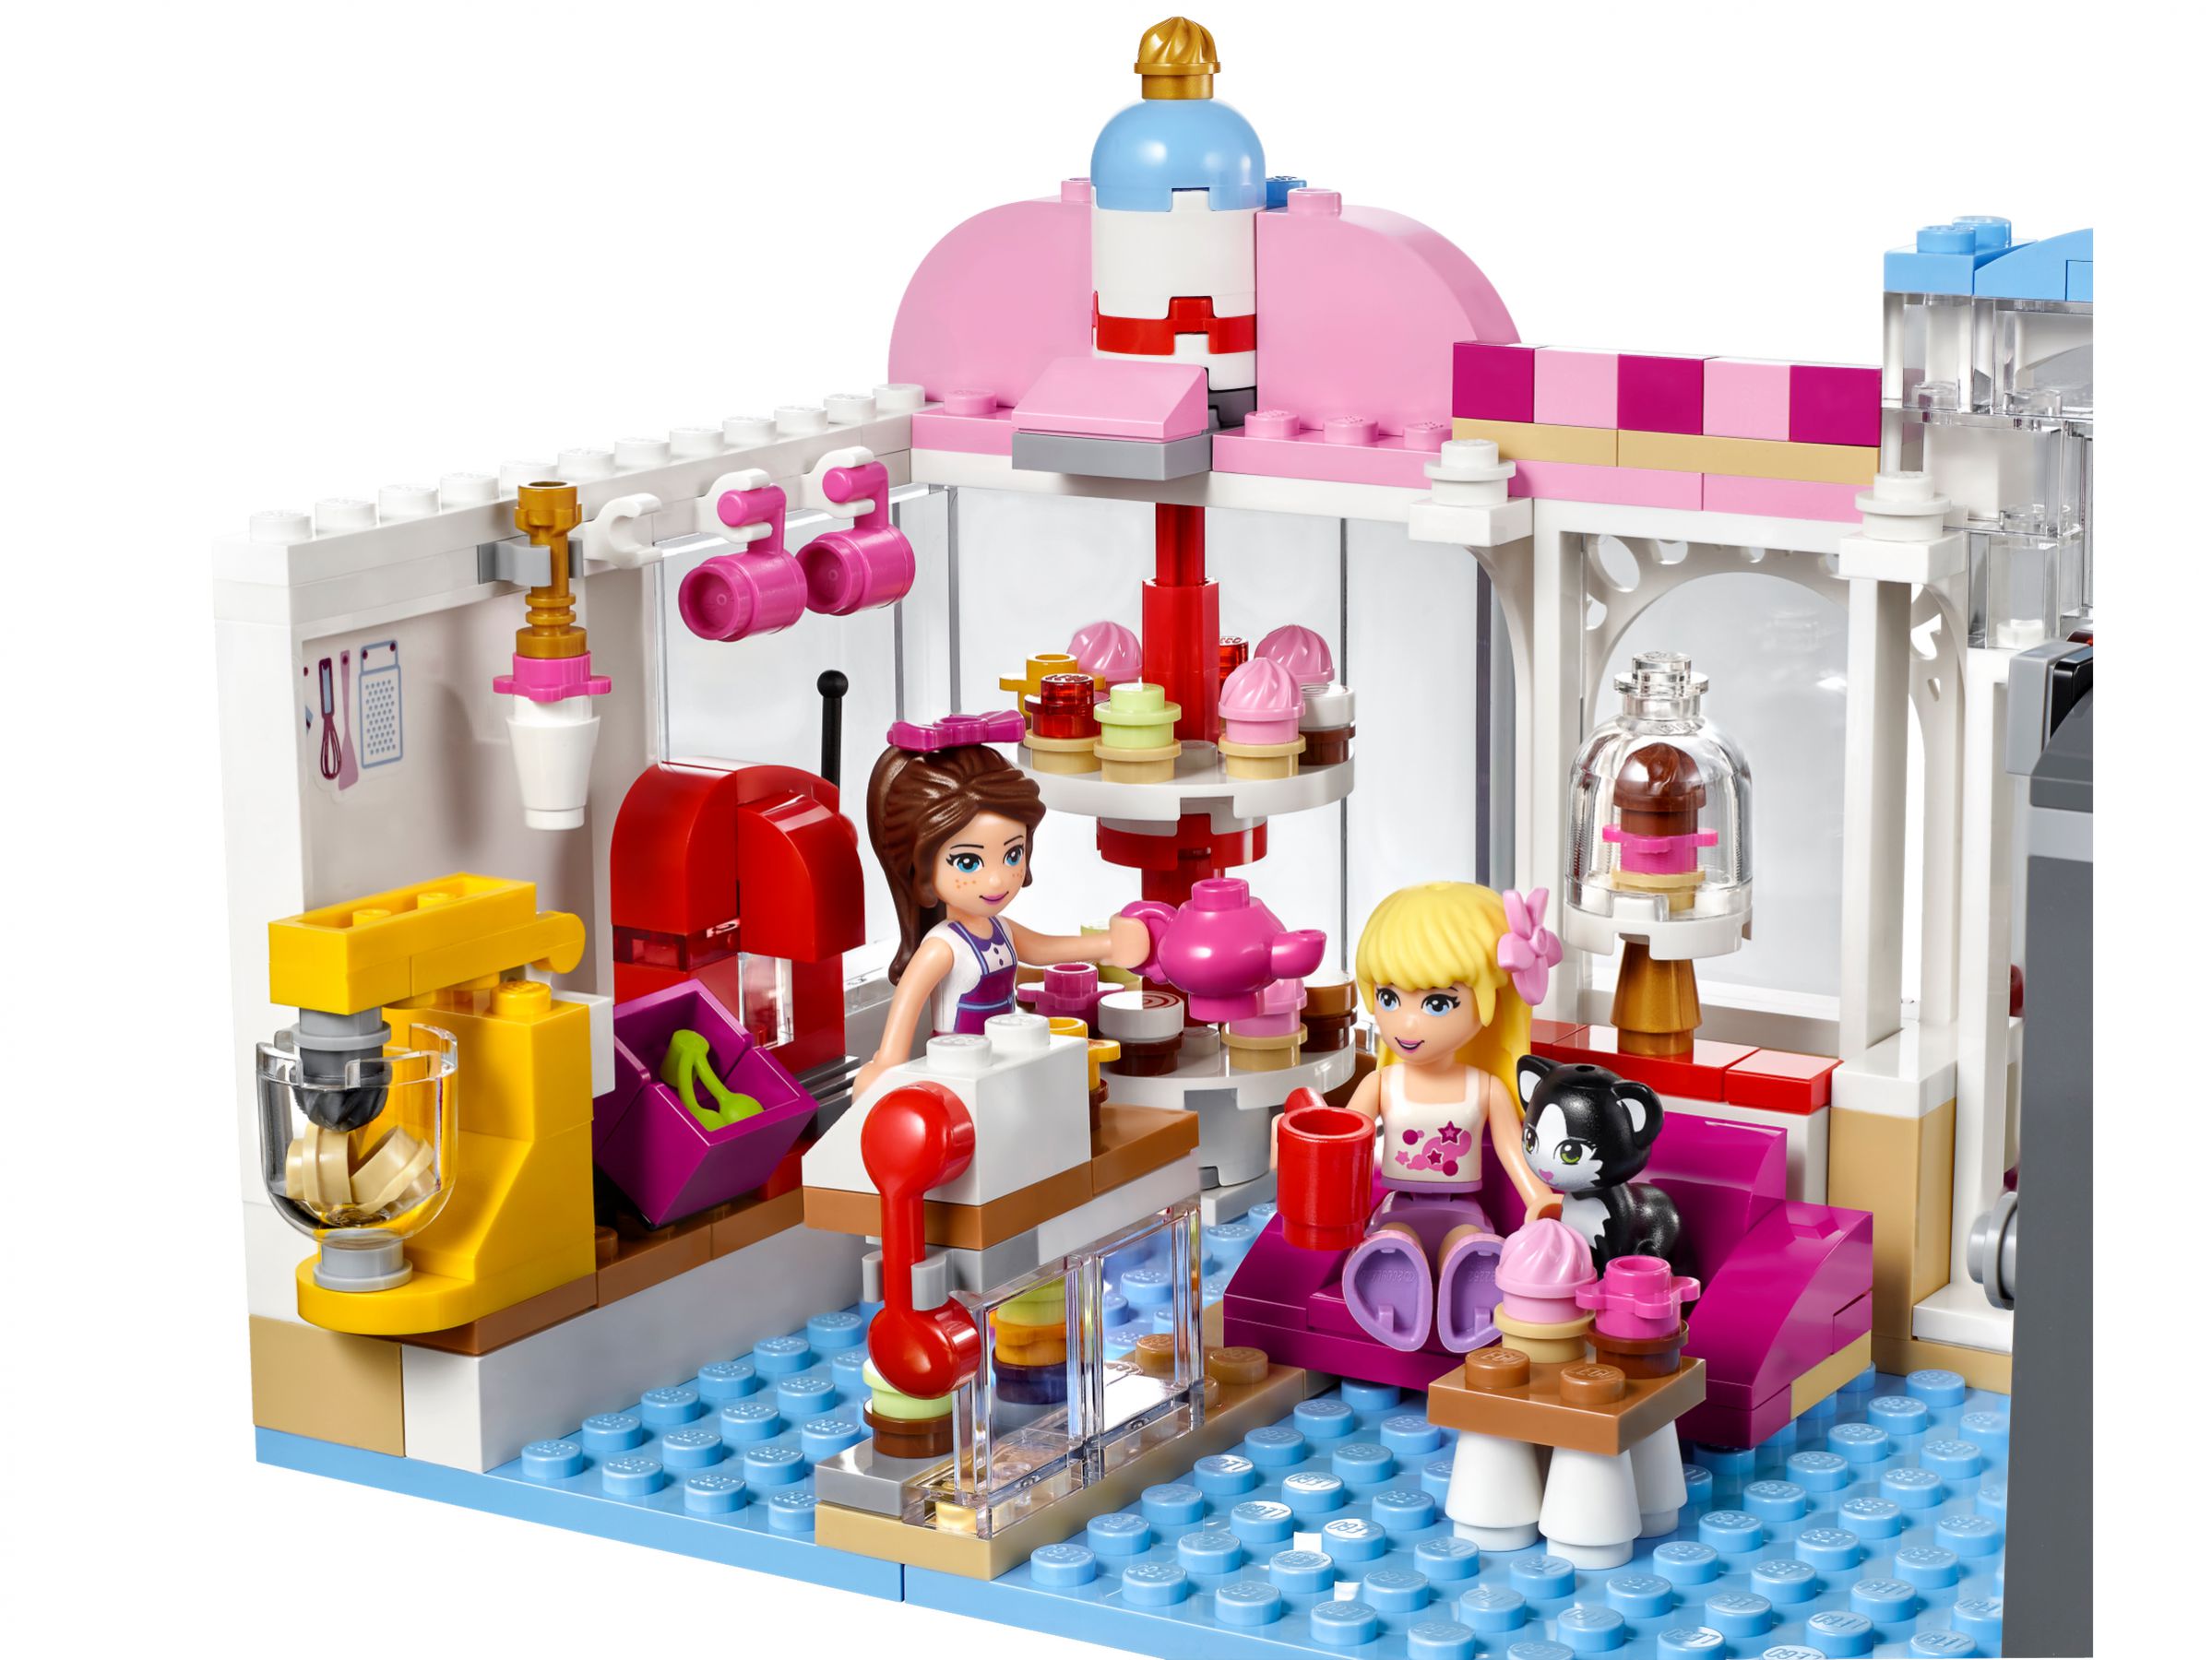 LEGO Friends 41119 Heartlake Cupcake-Café LEGO_41119_alt3.jpg